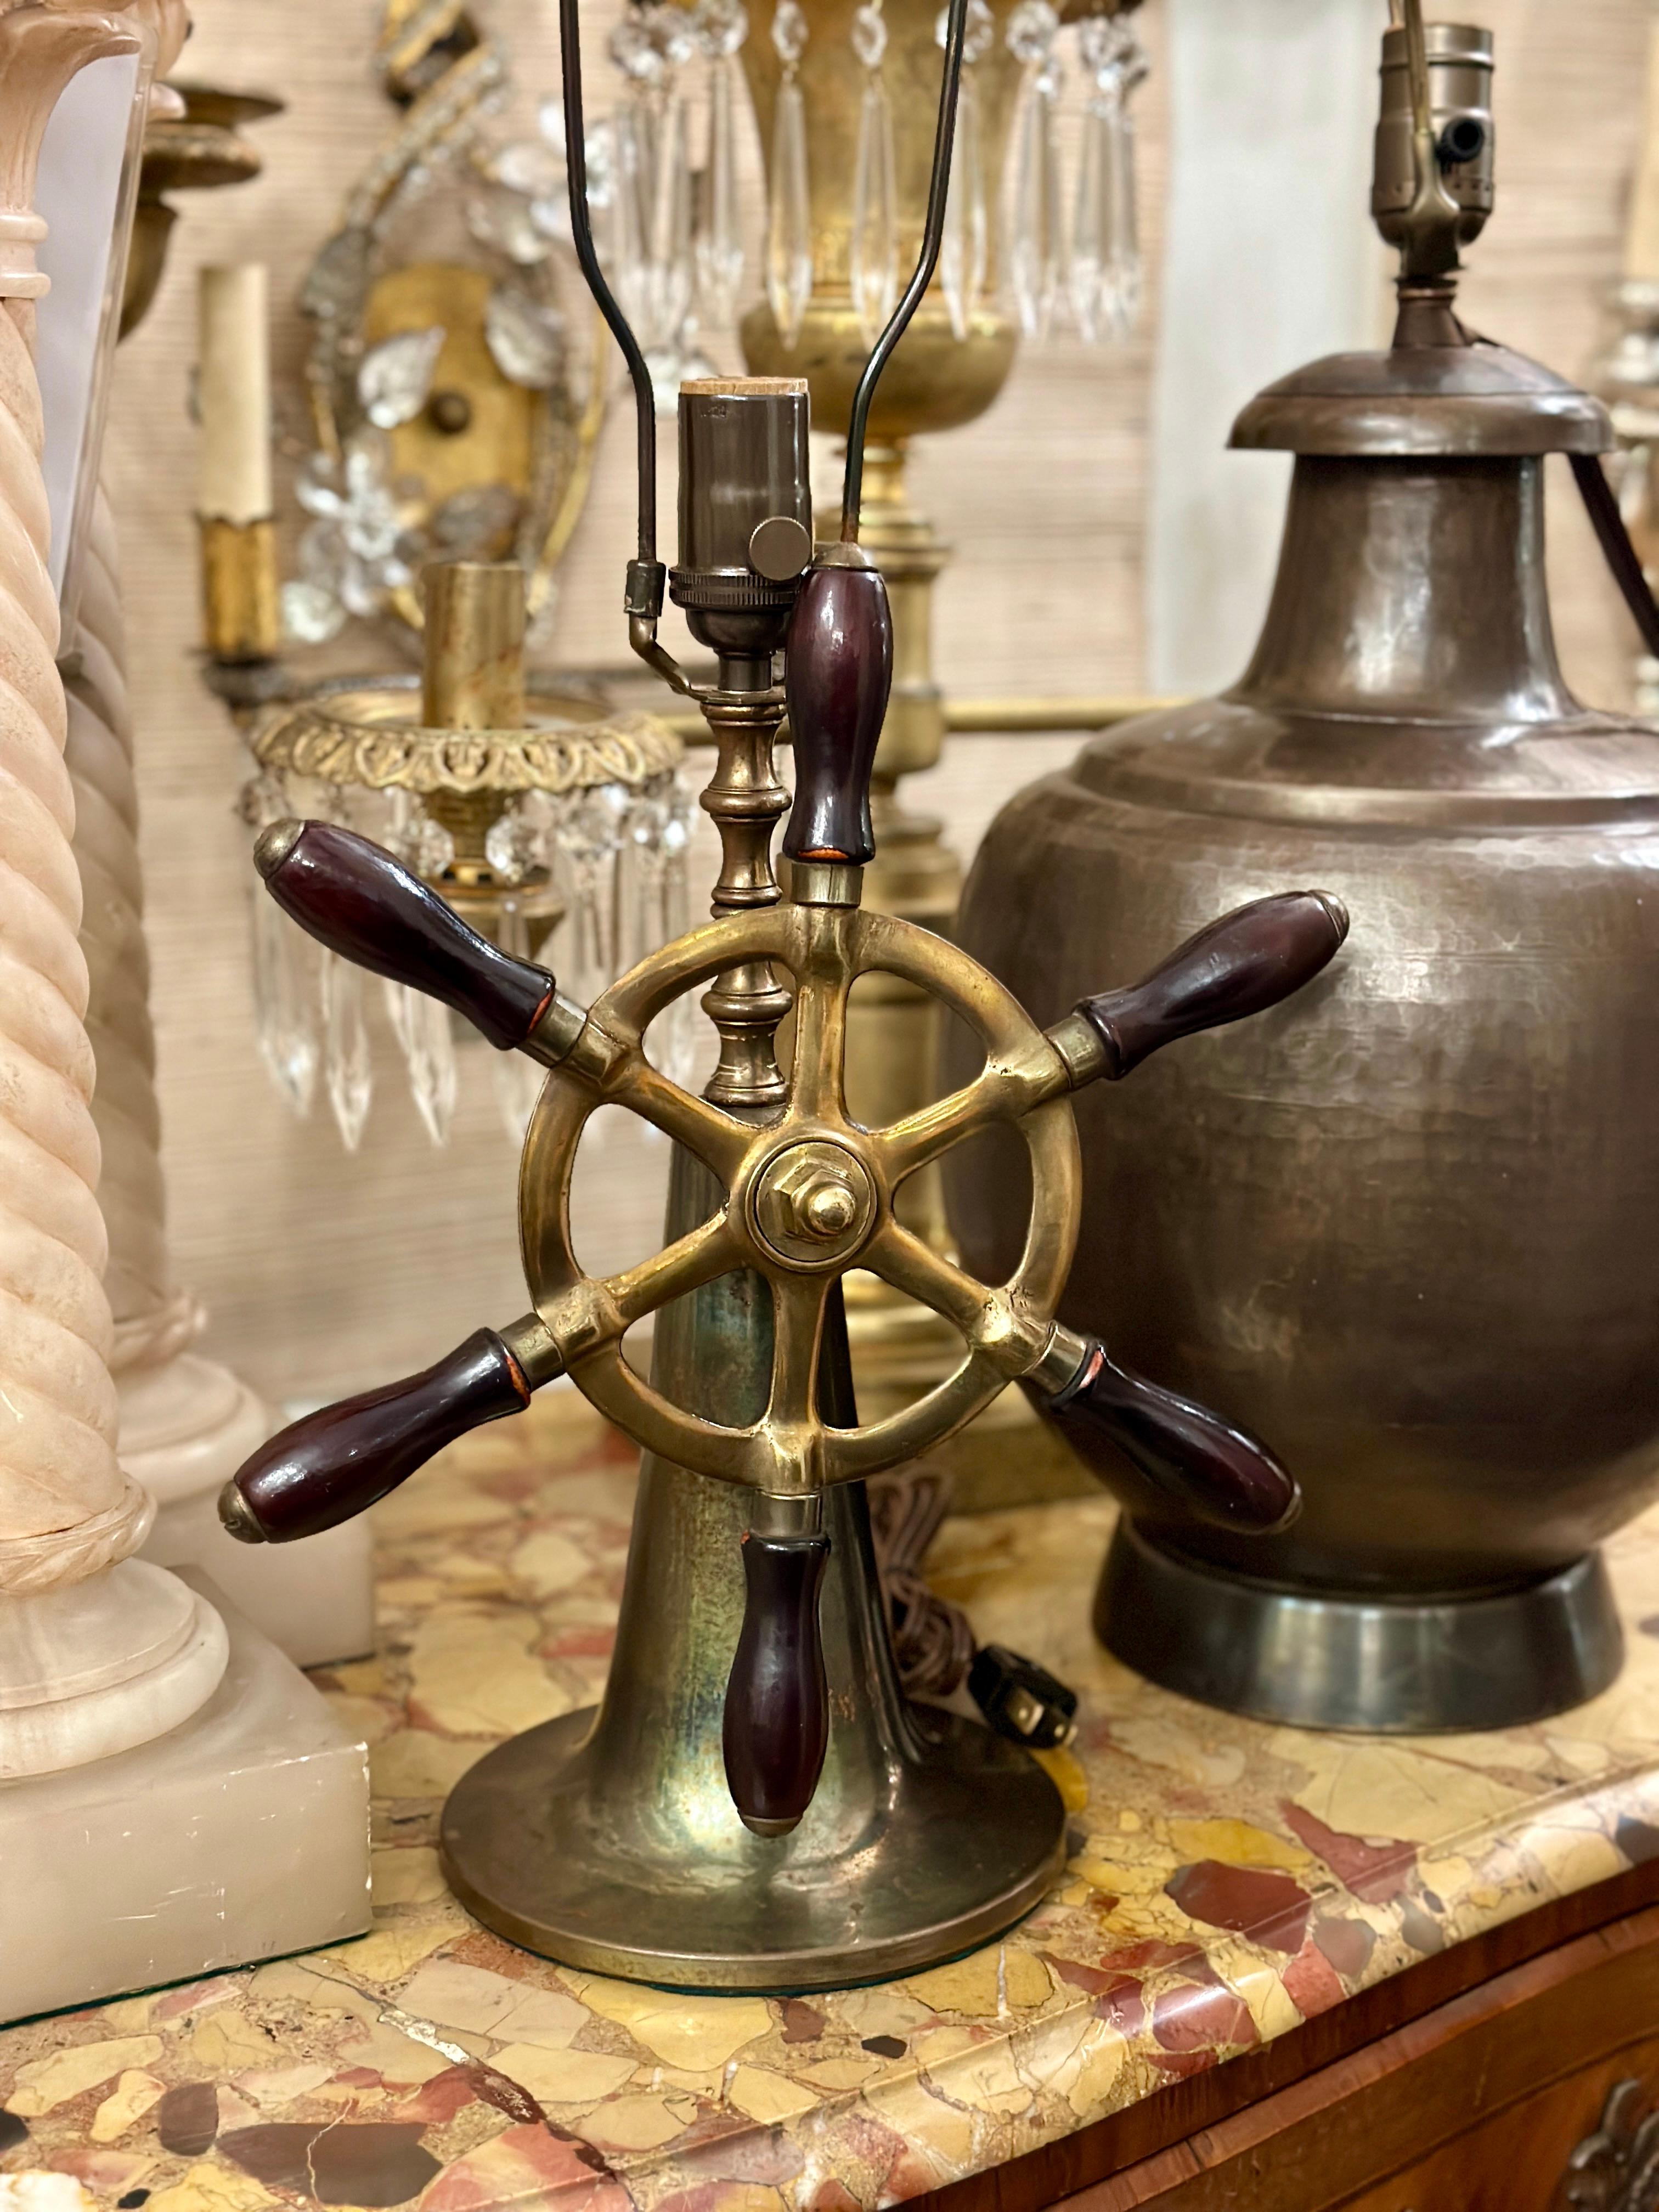 Lampe de table nautique anglaise des années 1920, roue de bateau.

Mesures :
Hauteur du corps : 12
Hauteur jusqu'à l'appui de l'abat-jour : 22